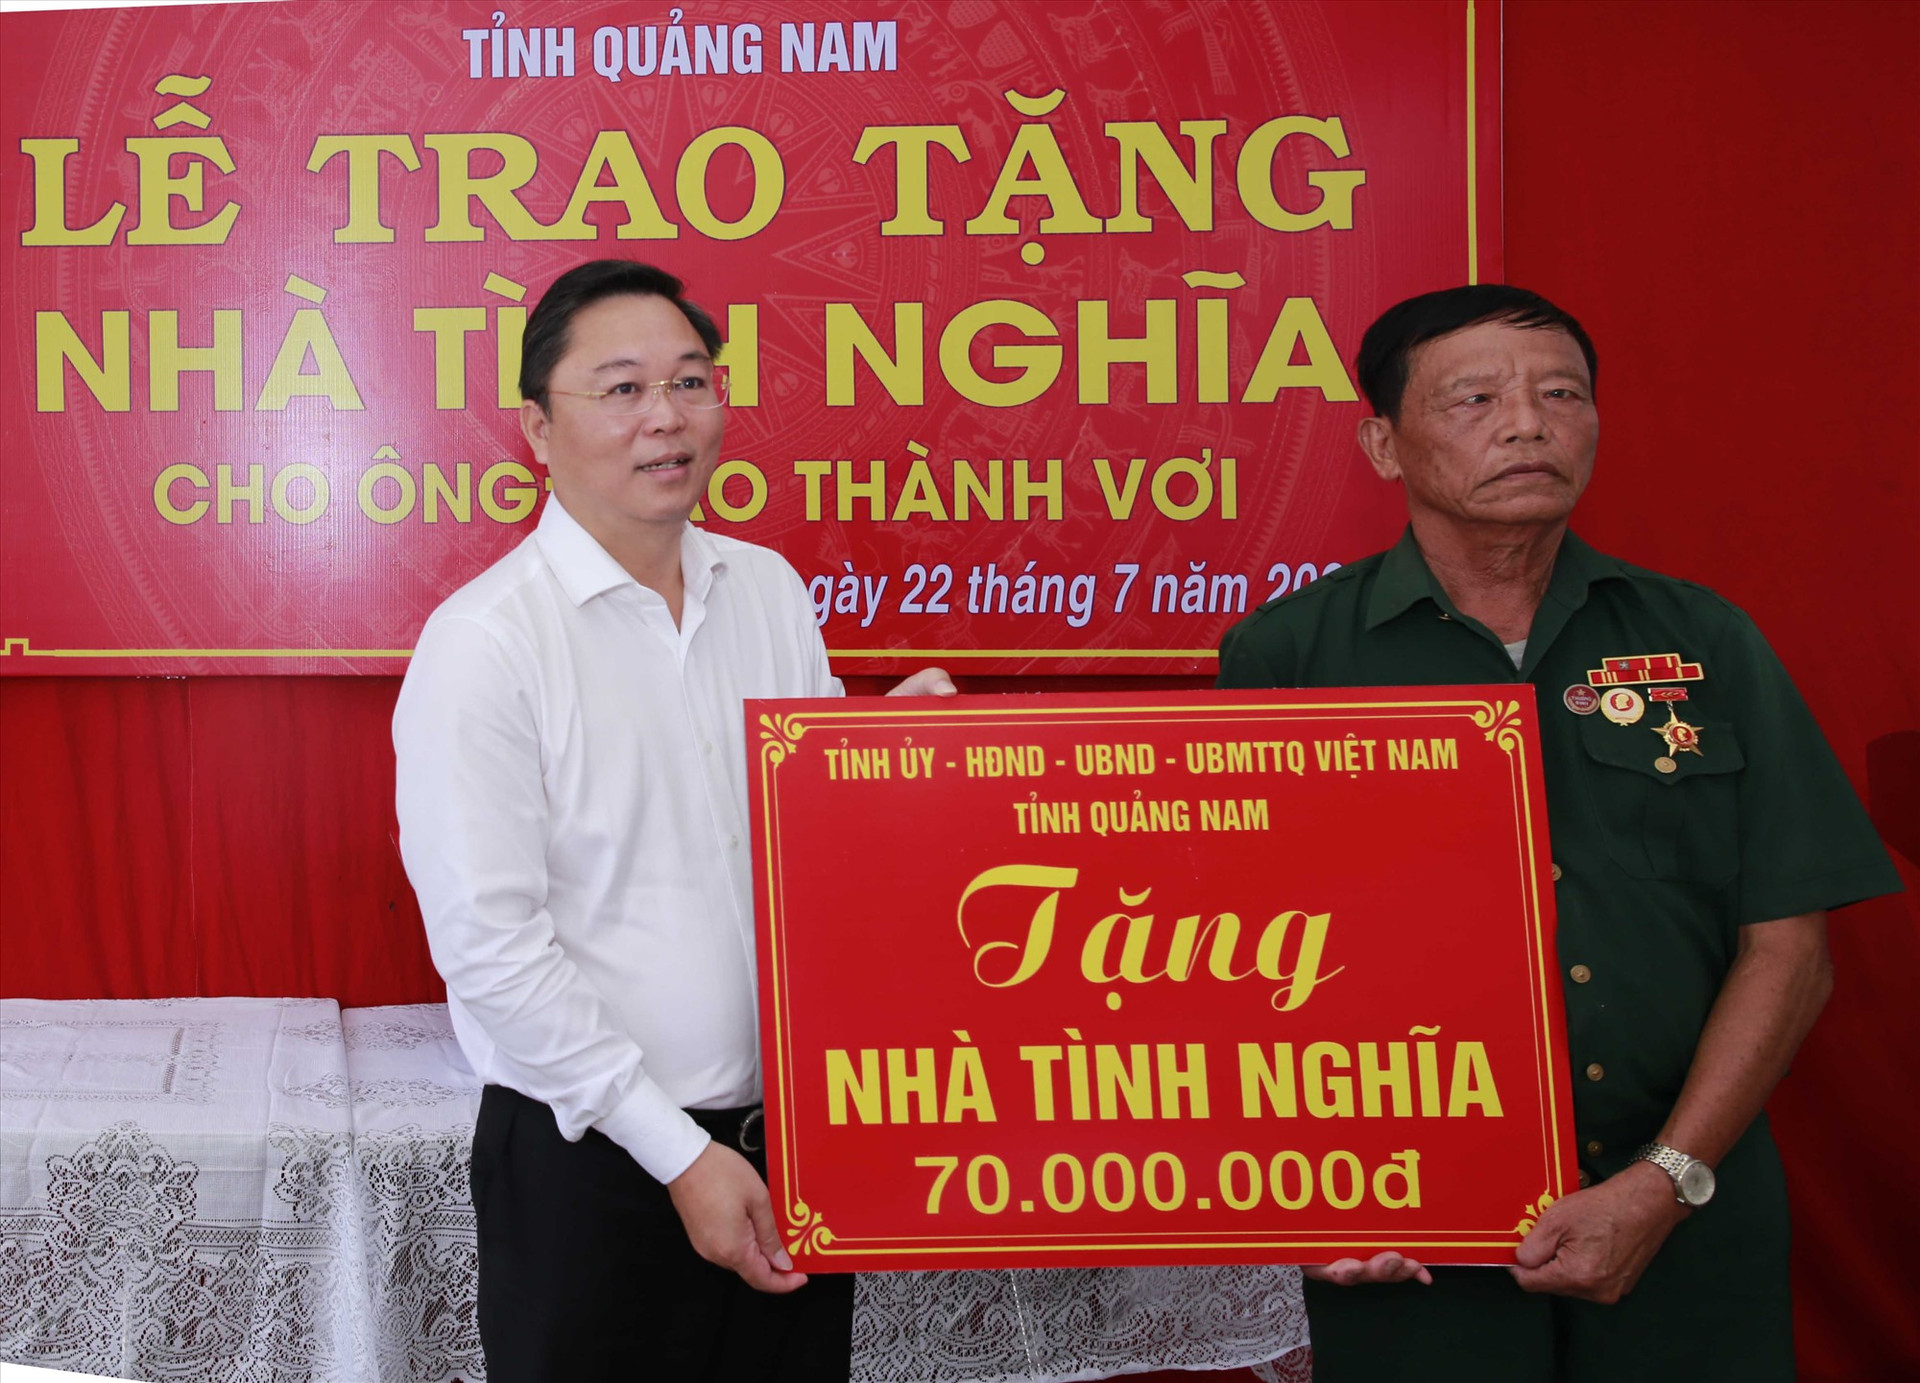 Chủ tịch UBND tỉnh Lê Trí Thanh trao tặng nhà tình nghĩa cho gia đình ông Cao Thành Vơi. Ảnh: T.C